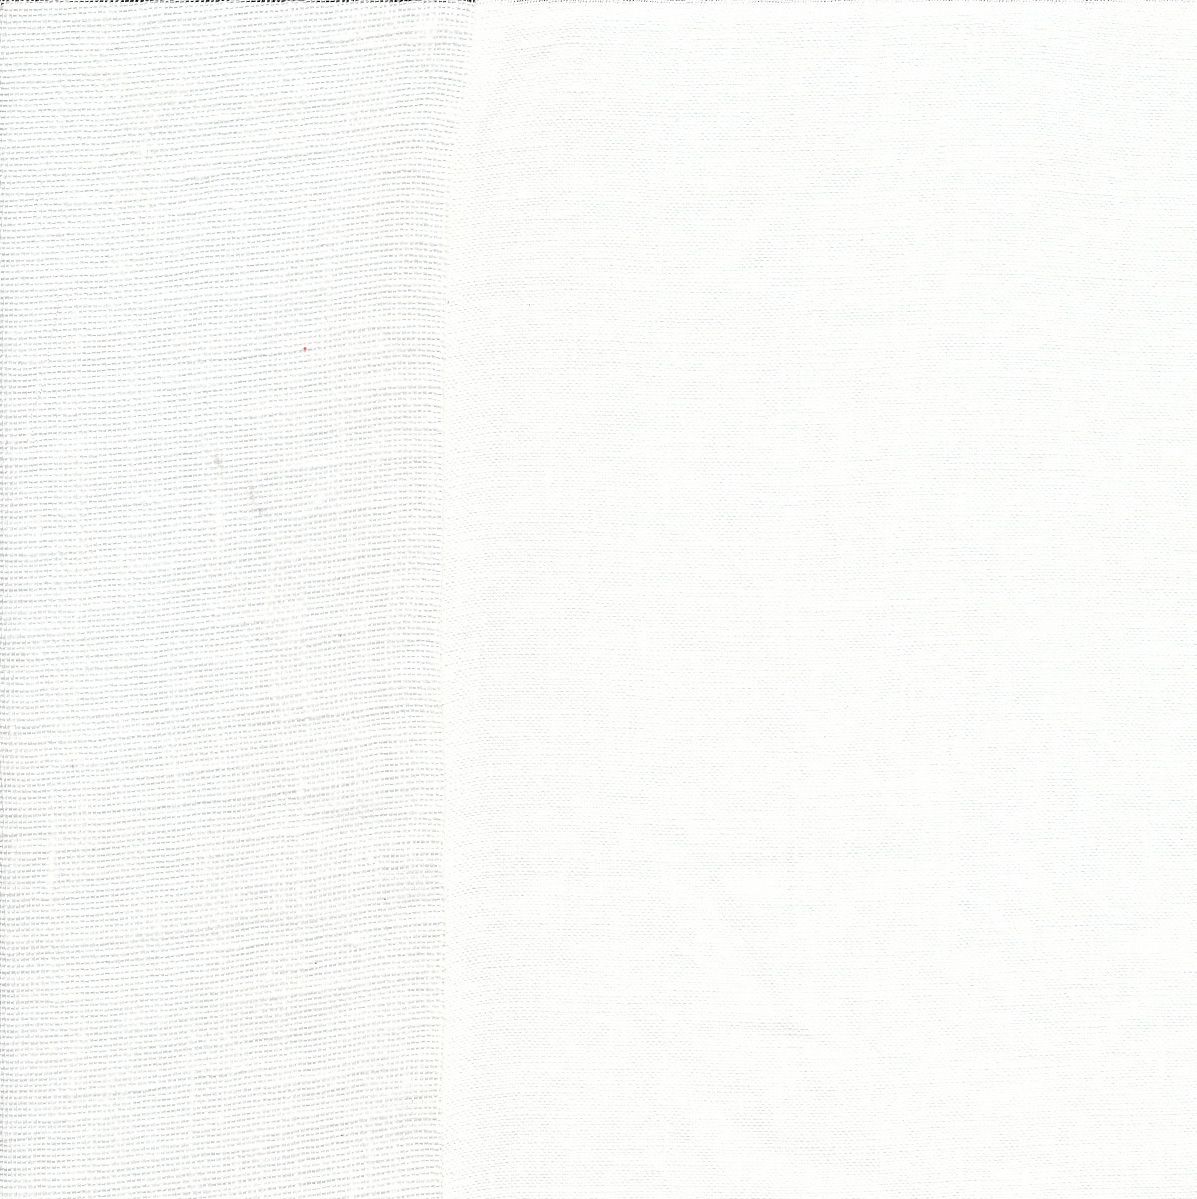 Lulla Smith Alcott Douillette/Duvet & Dec Pillows Fabric Sample - Ivory